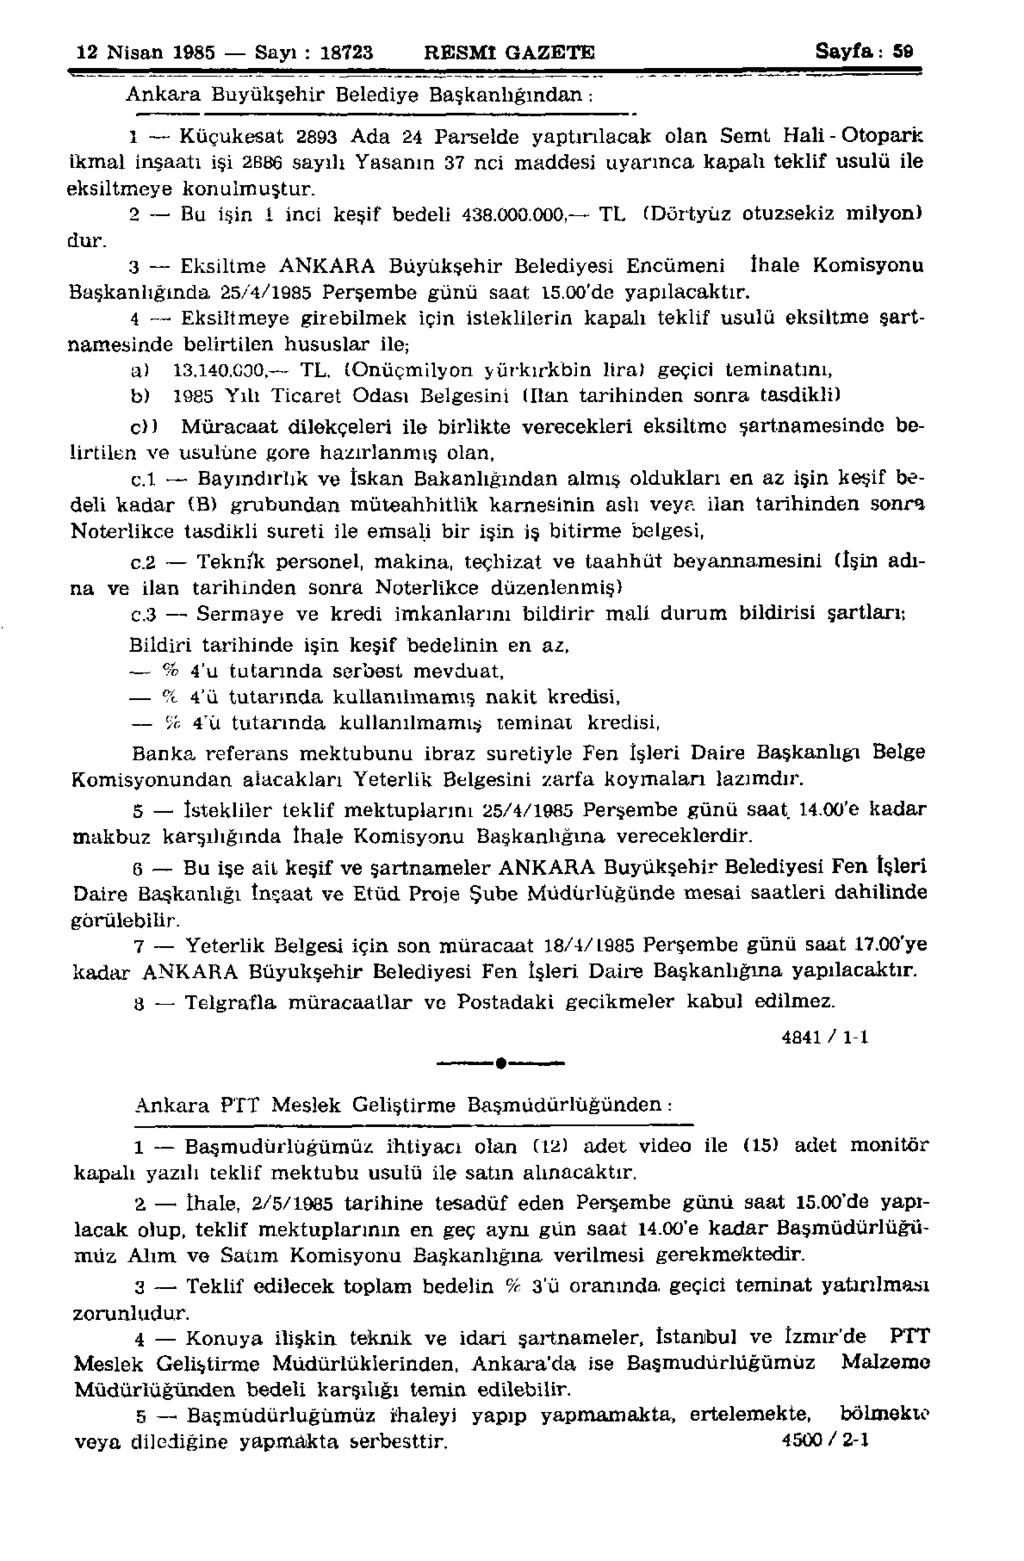 12 Nisan 1985 Sayı : 18723 RESMİ GAZETE Sayfa: 59 Ankara Buyükşehir Belediye Başkanlığından : 1 Küçukesat 2893 Ada 24 Parselde yaptırılacak olan Semt Hali-Otopark ikmal inşaatı işi 2886 sayılı